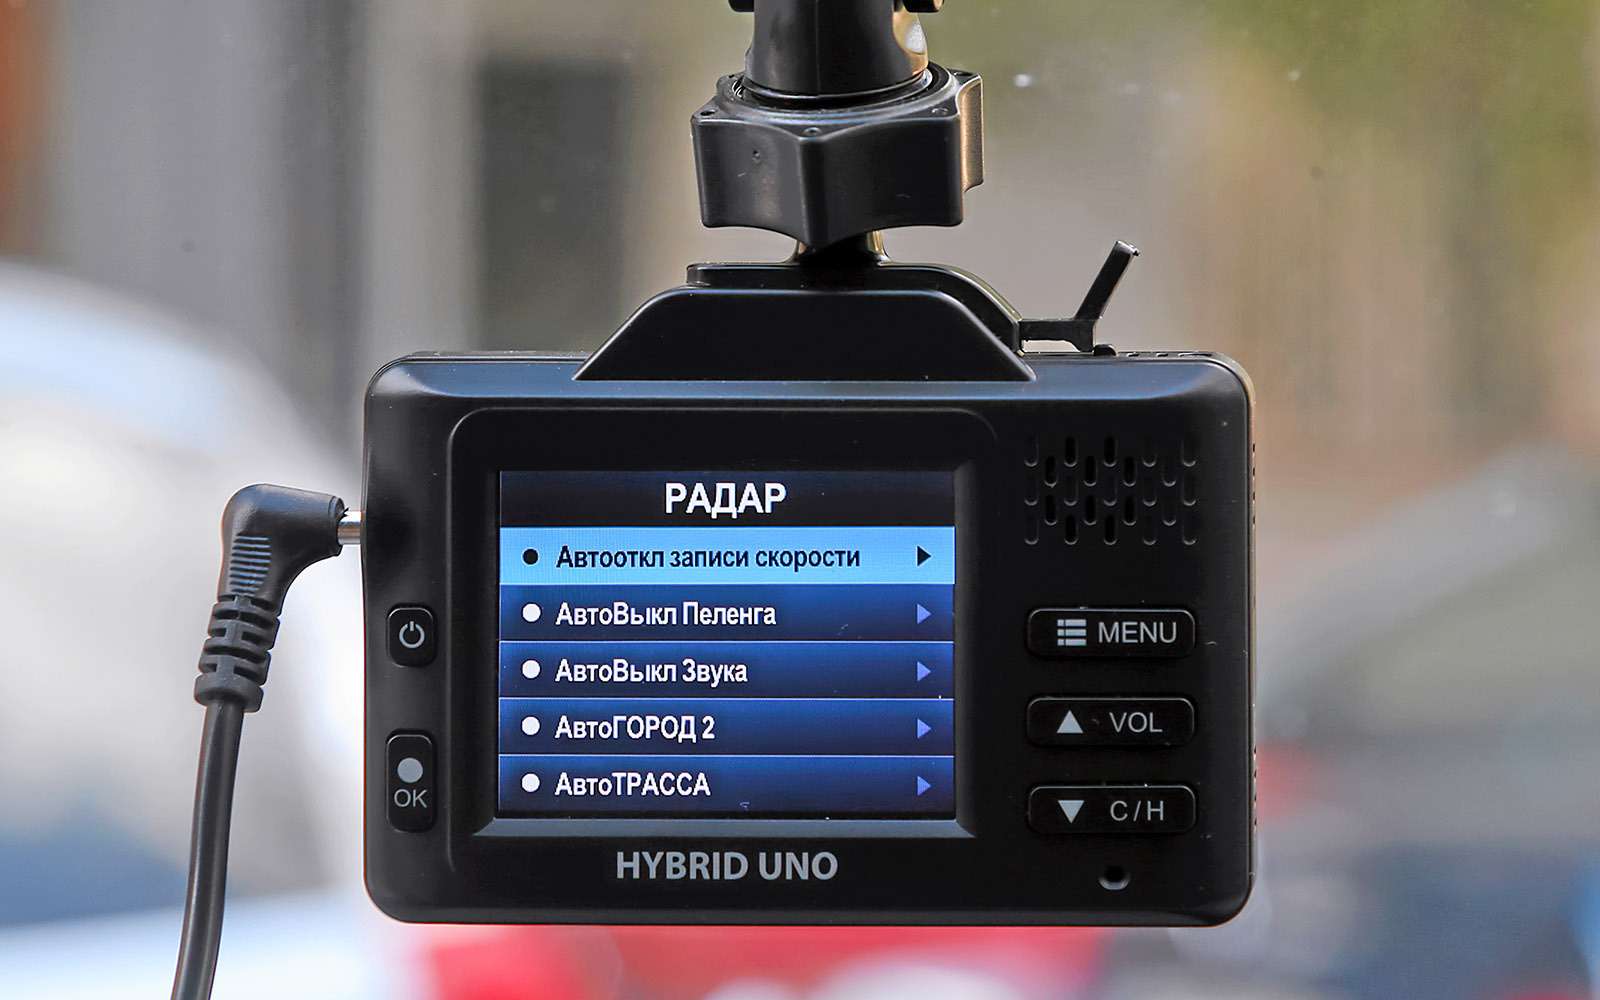 Видеорегистраторы с радар-детектором —  тест 7 моделей — фото 651740